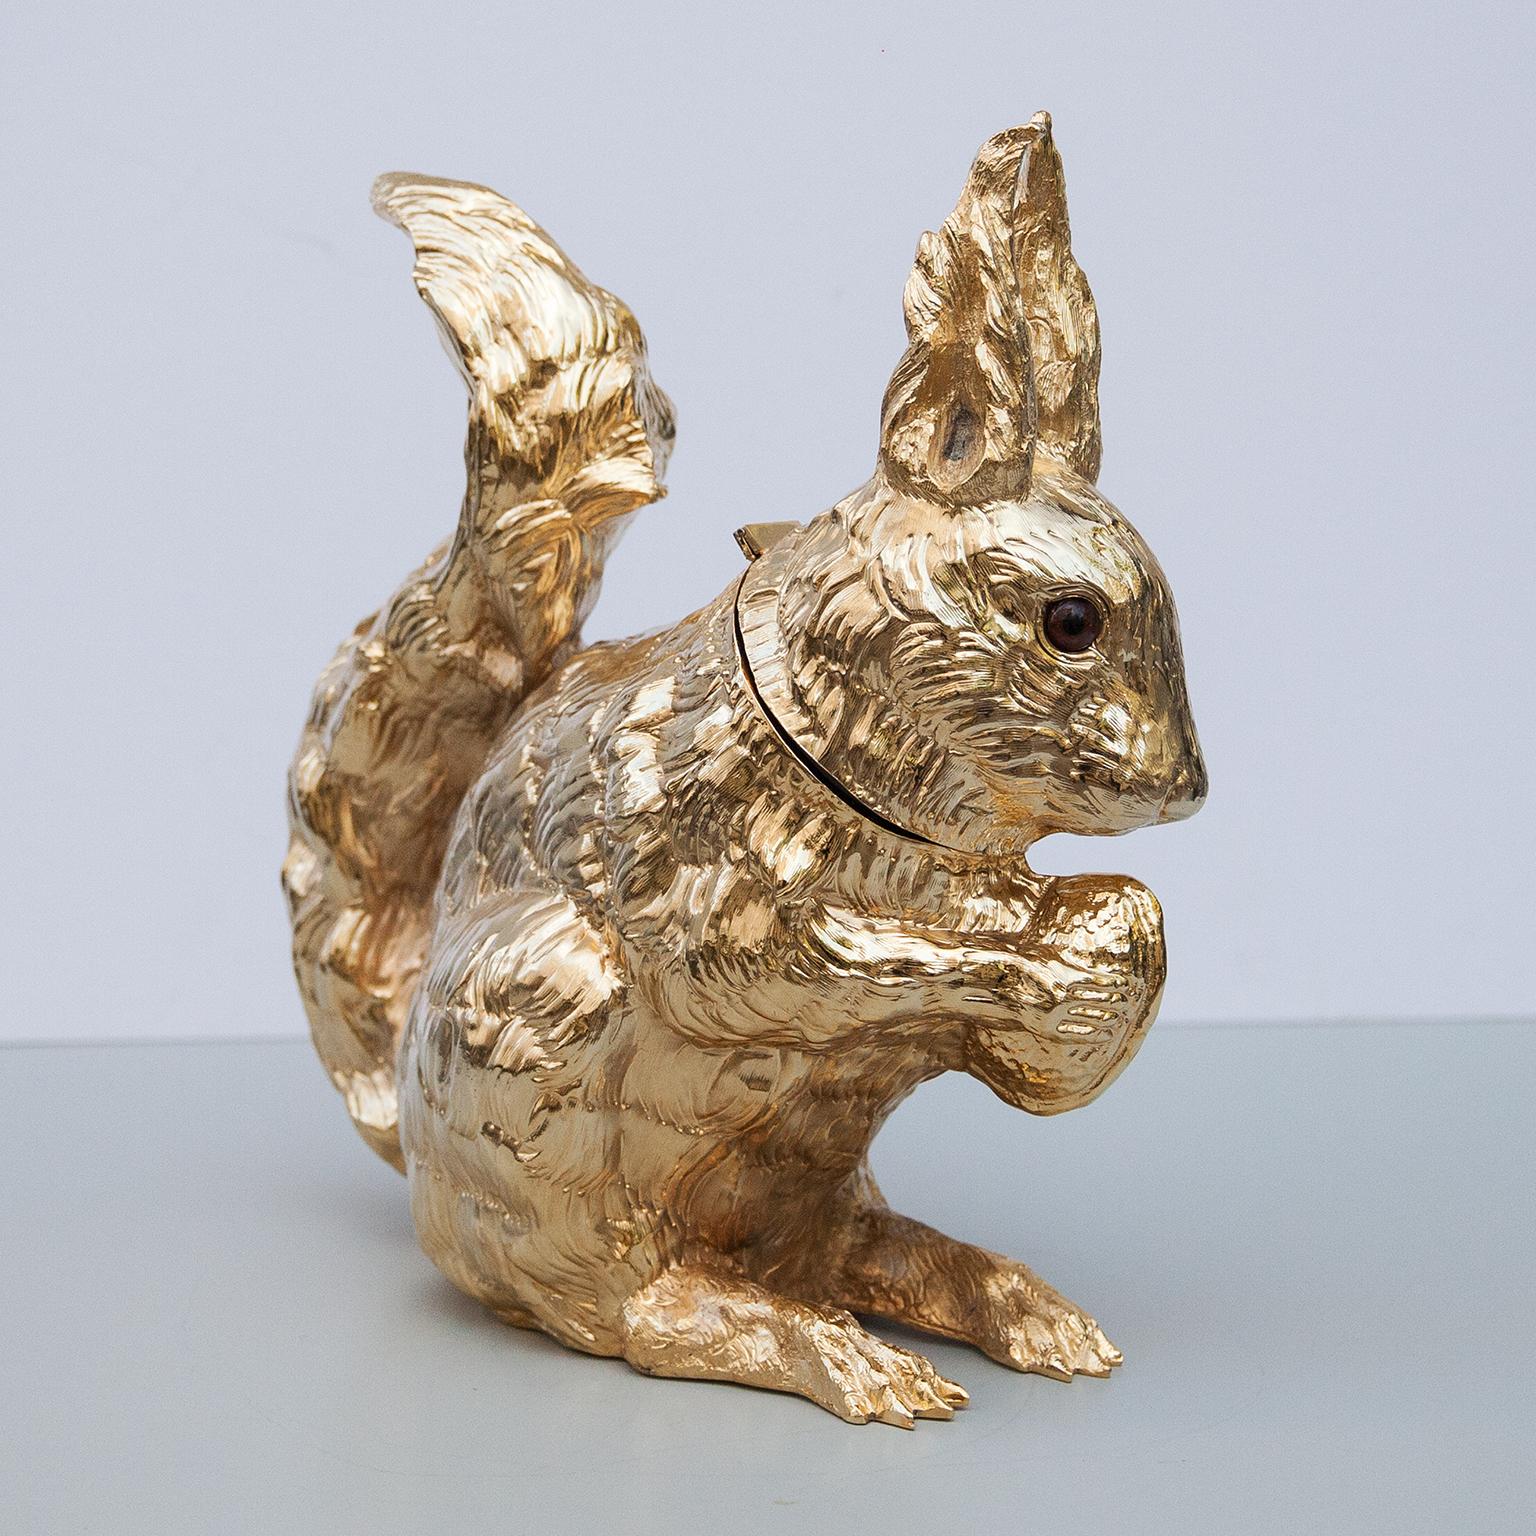 Franco Lapinis exquisite, lebensgroße Eichhörnchen-Skulptur Weinkühler oder Eiskühler ist komplett vergoldet und seine Oberfläche ist leicht strukturiert, um ihm ein organisches Gefühl zu geben, neue Kunststoffeinlage innen. Ob allein oder in